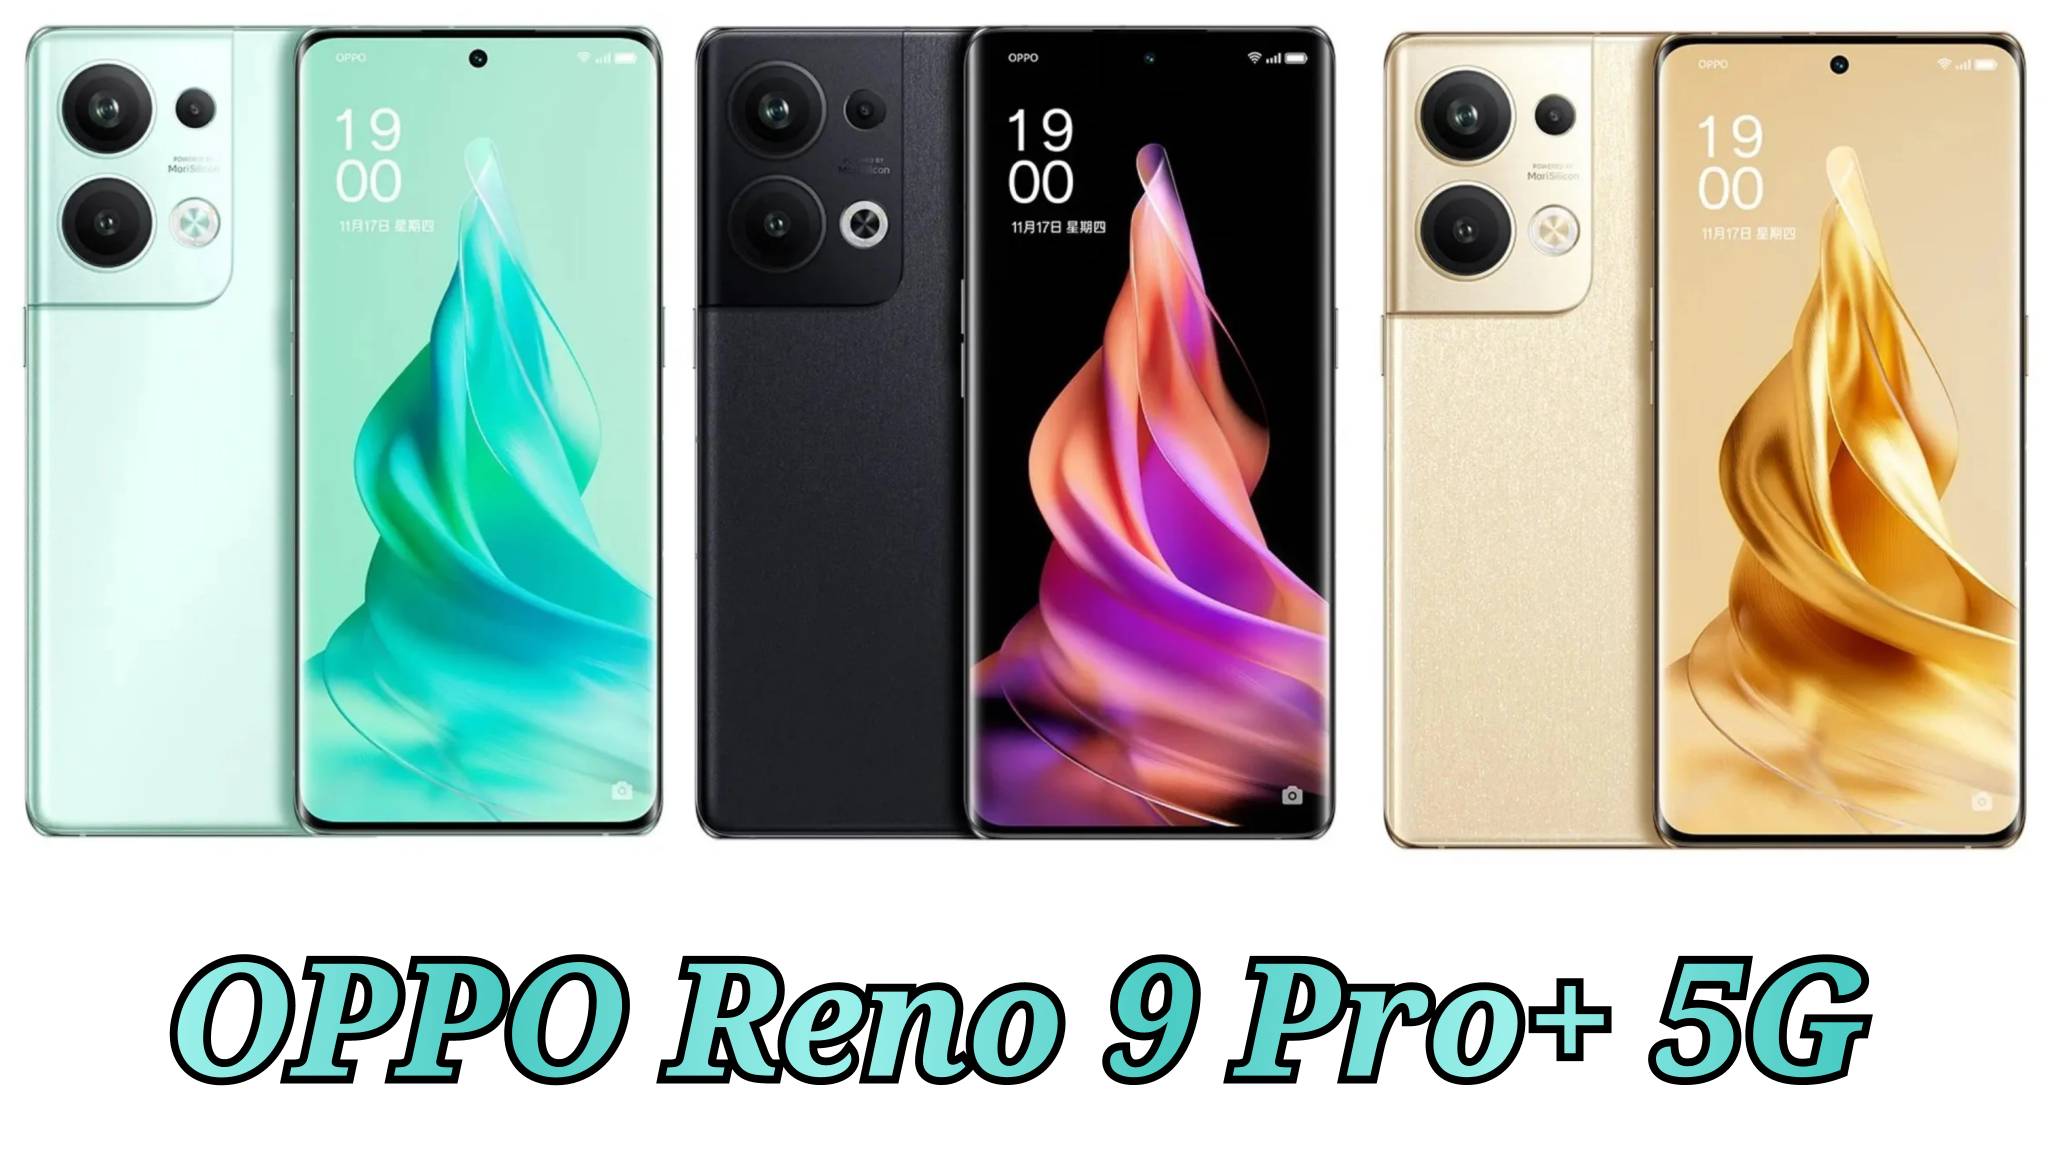 OPPO Reno 9 Pro+ 5G